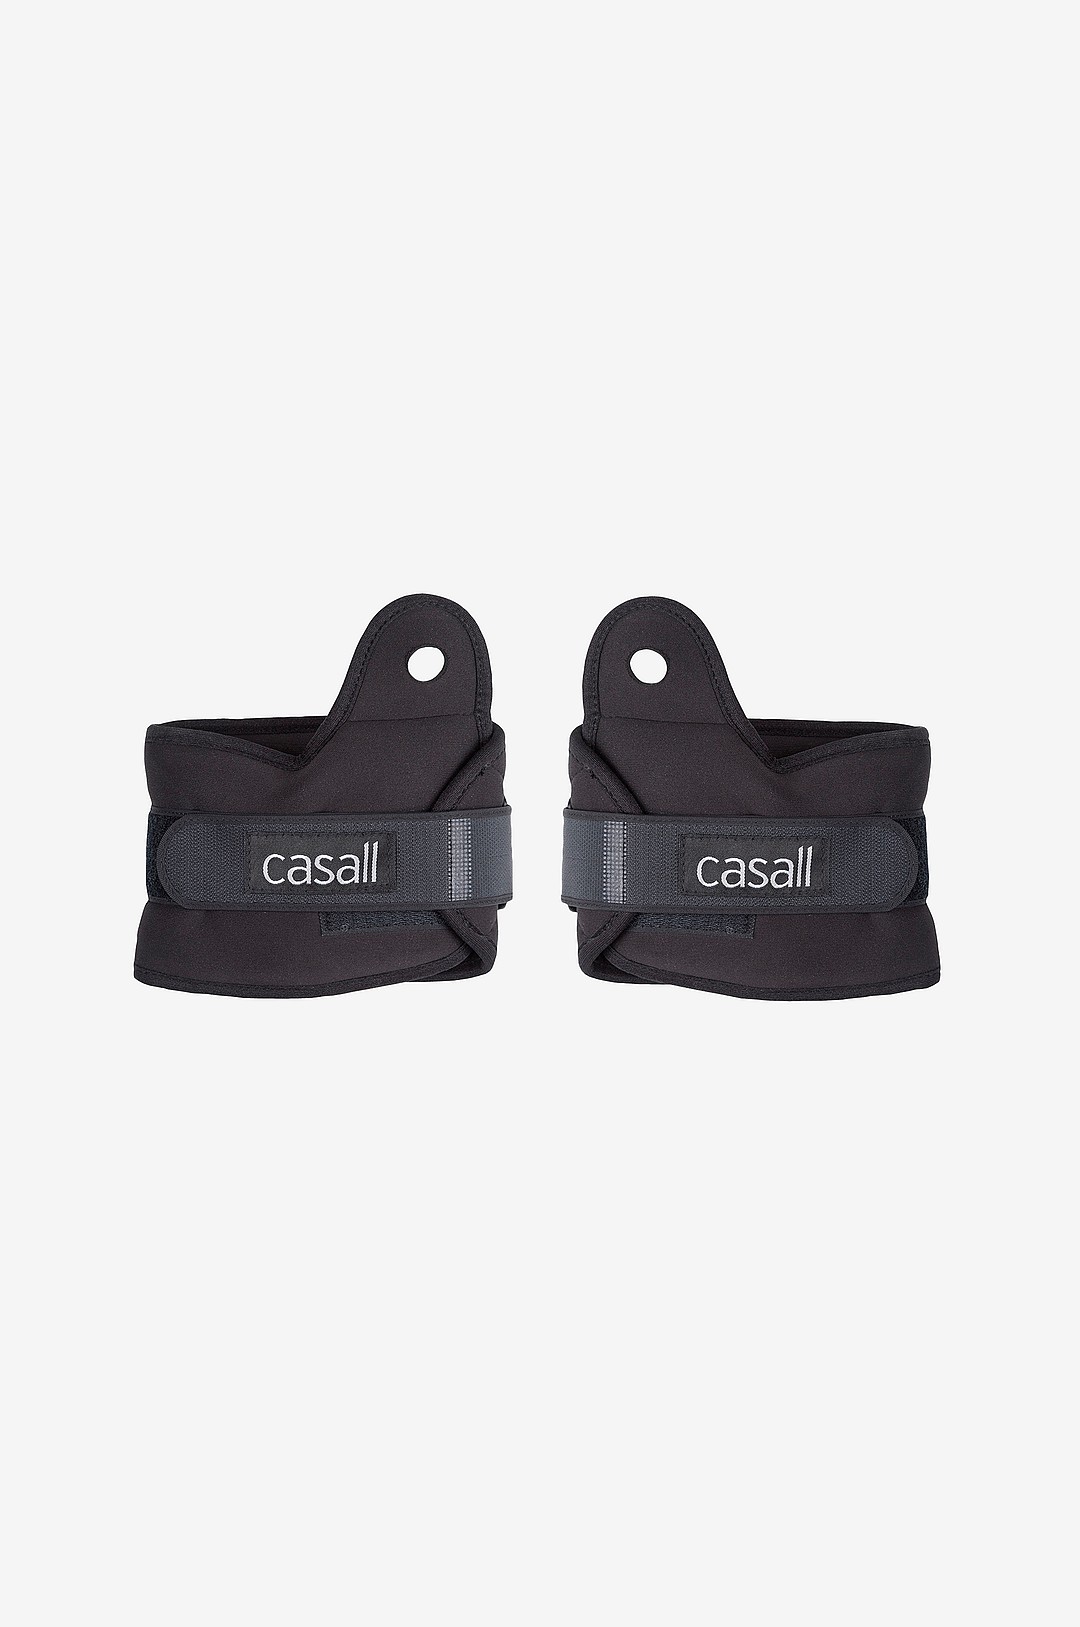 Casall - Wrist weights 2x1kg Black